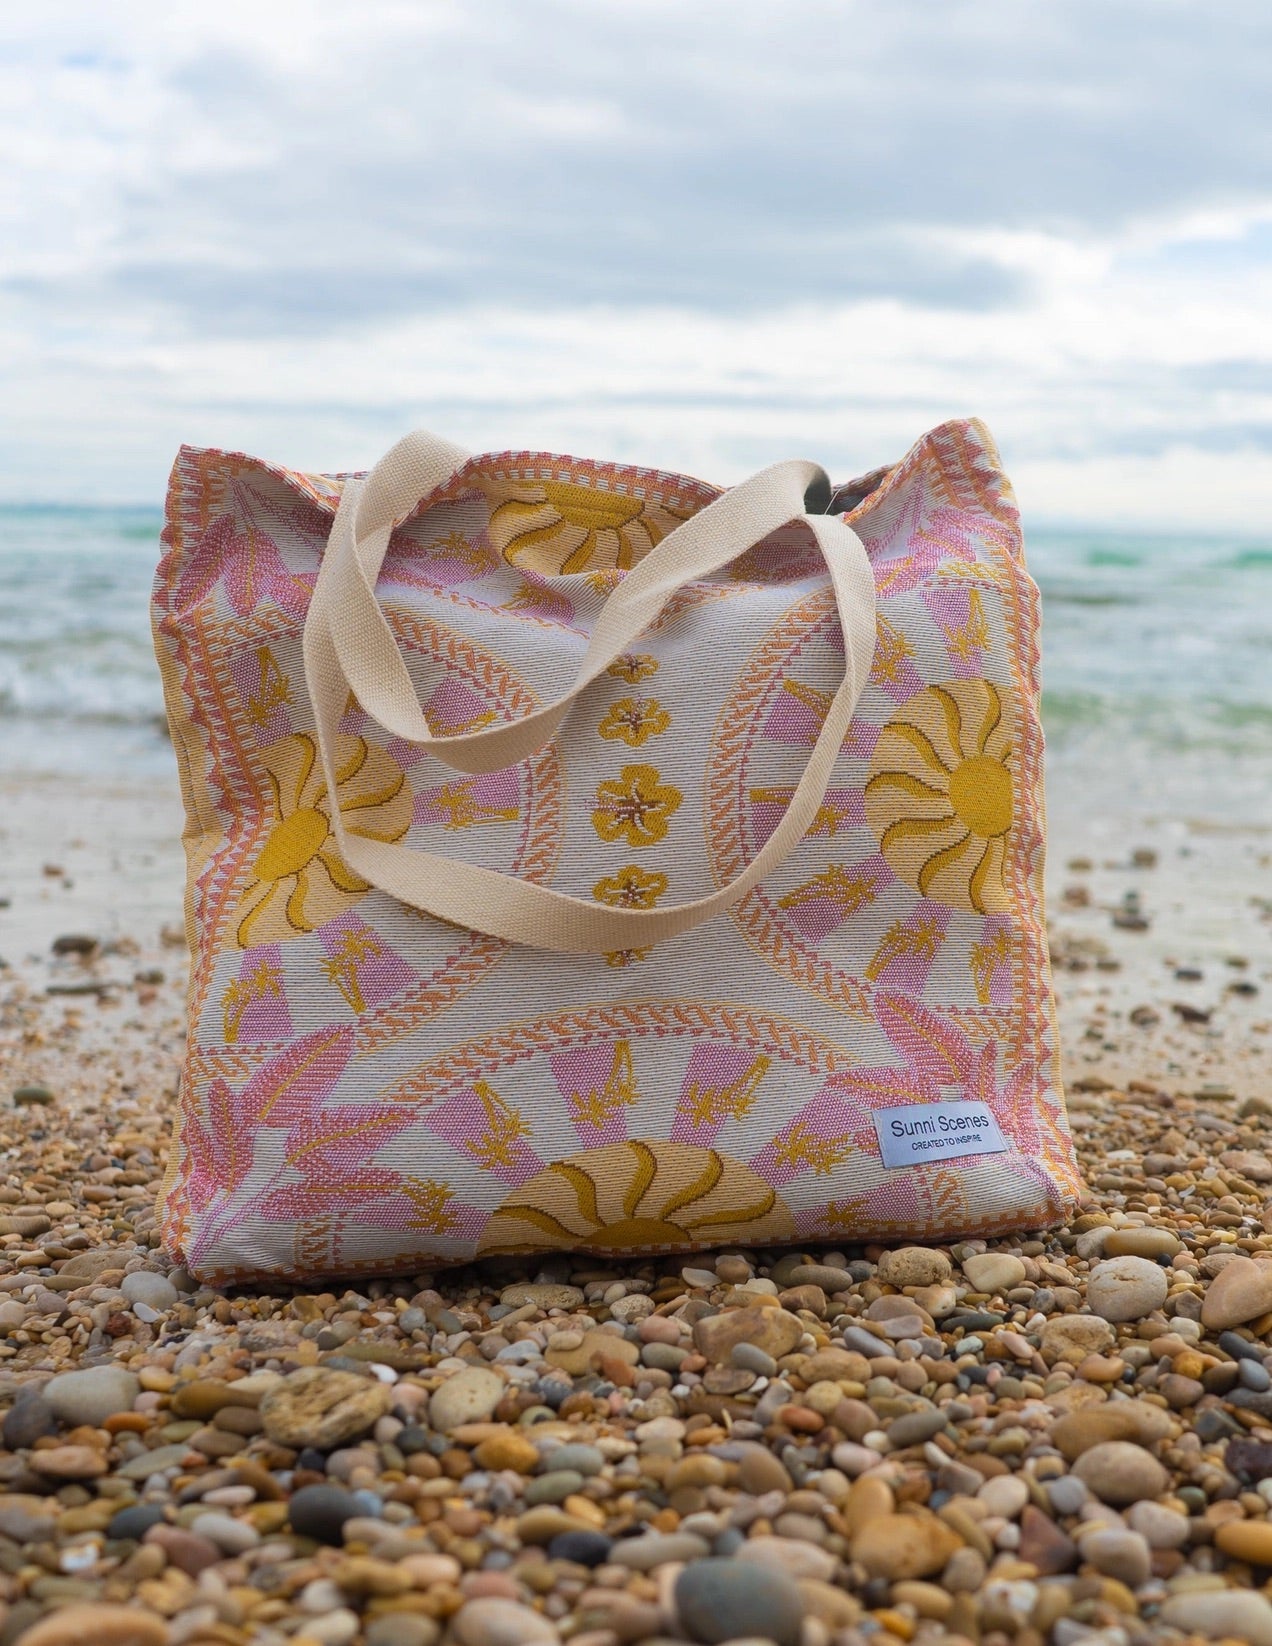 Sunni Scenes - Soli Beach Tote Bag - Sunny Bliss - Australia 